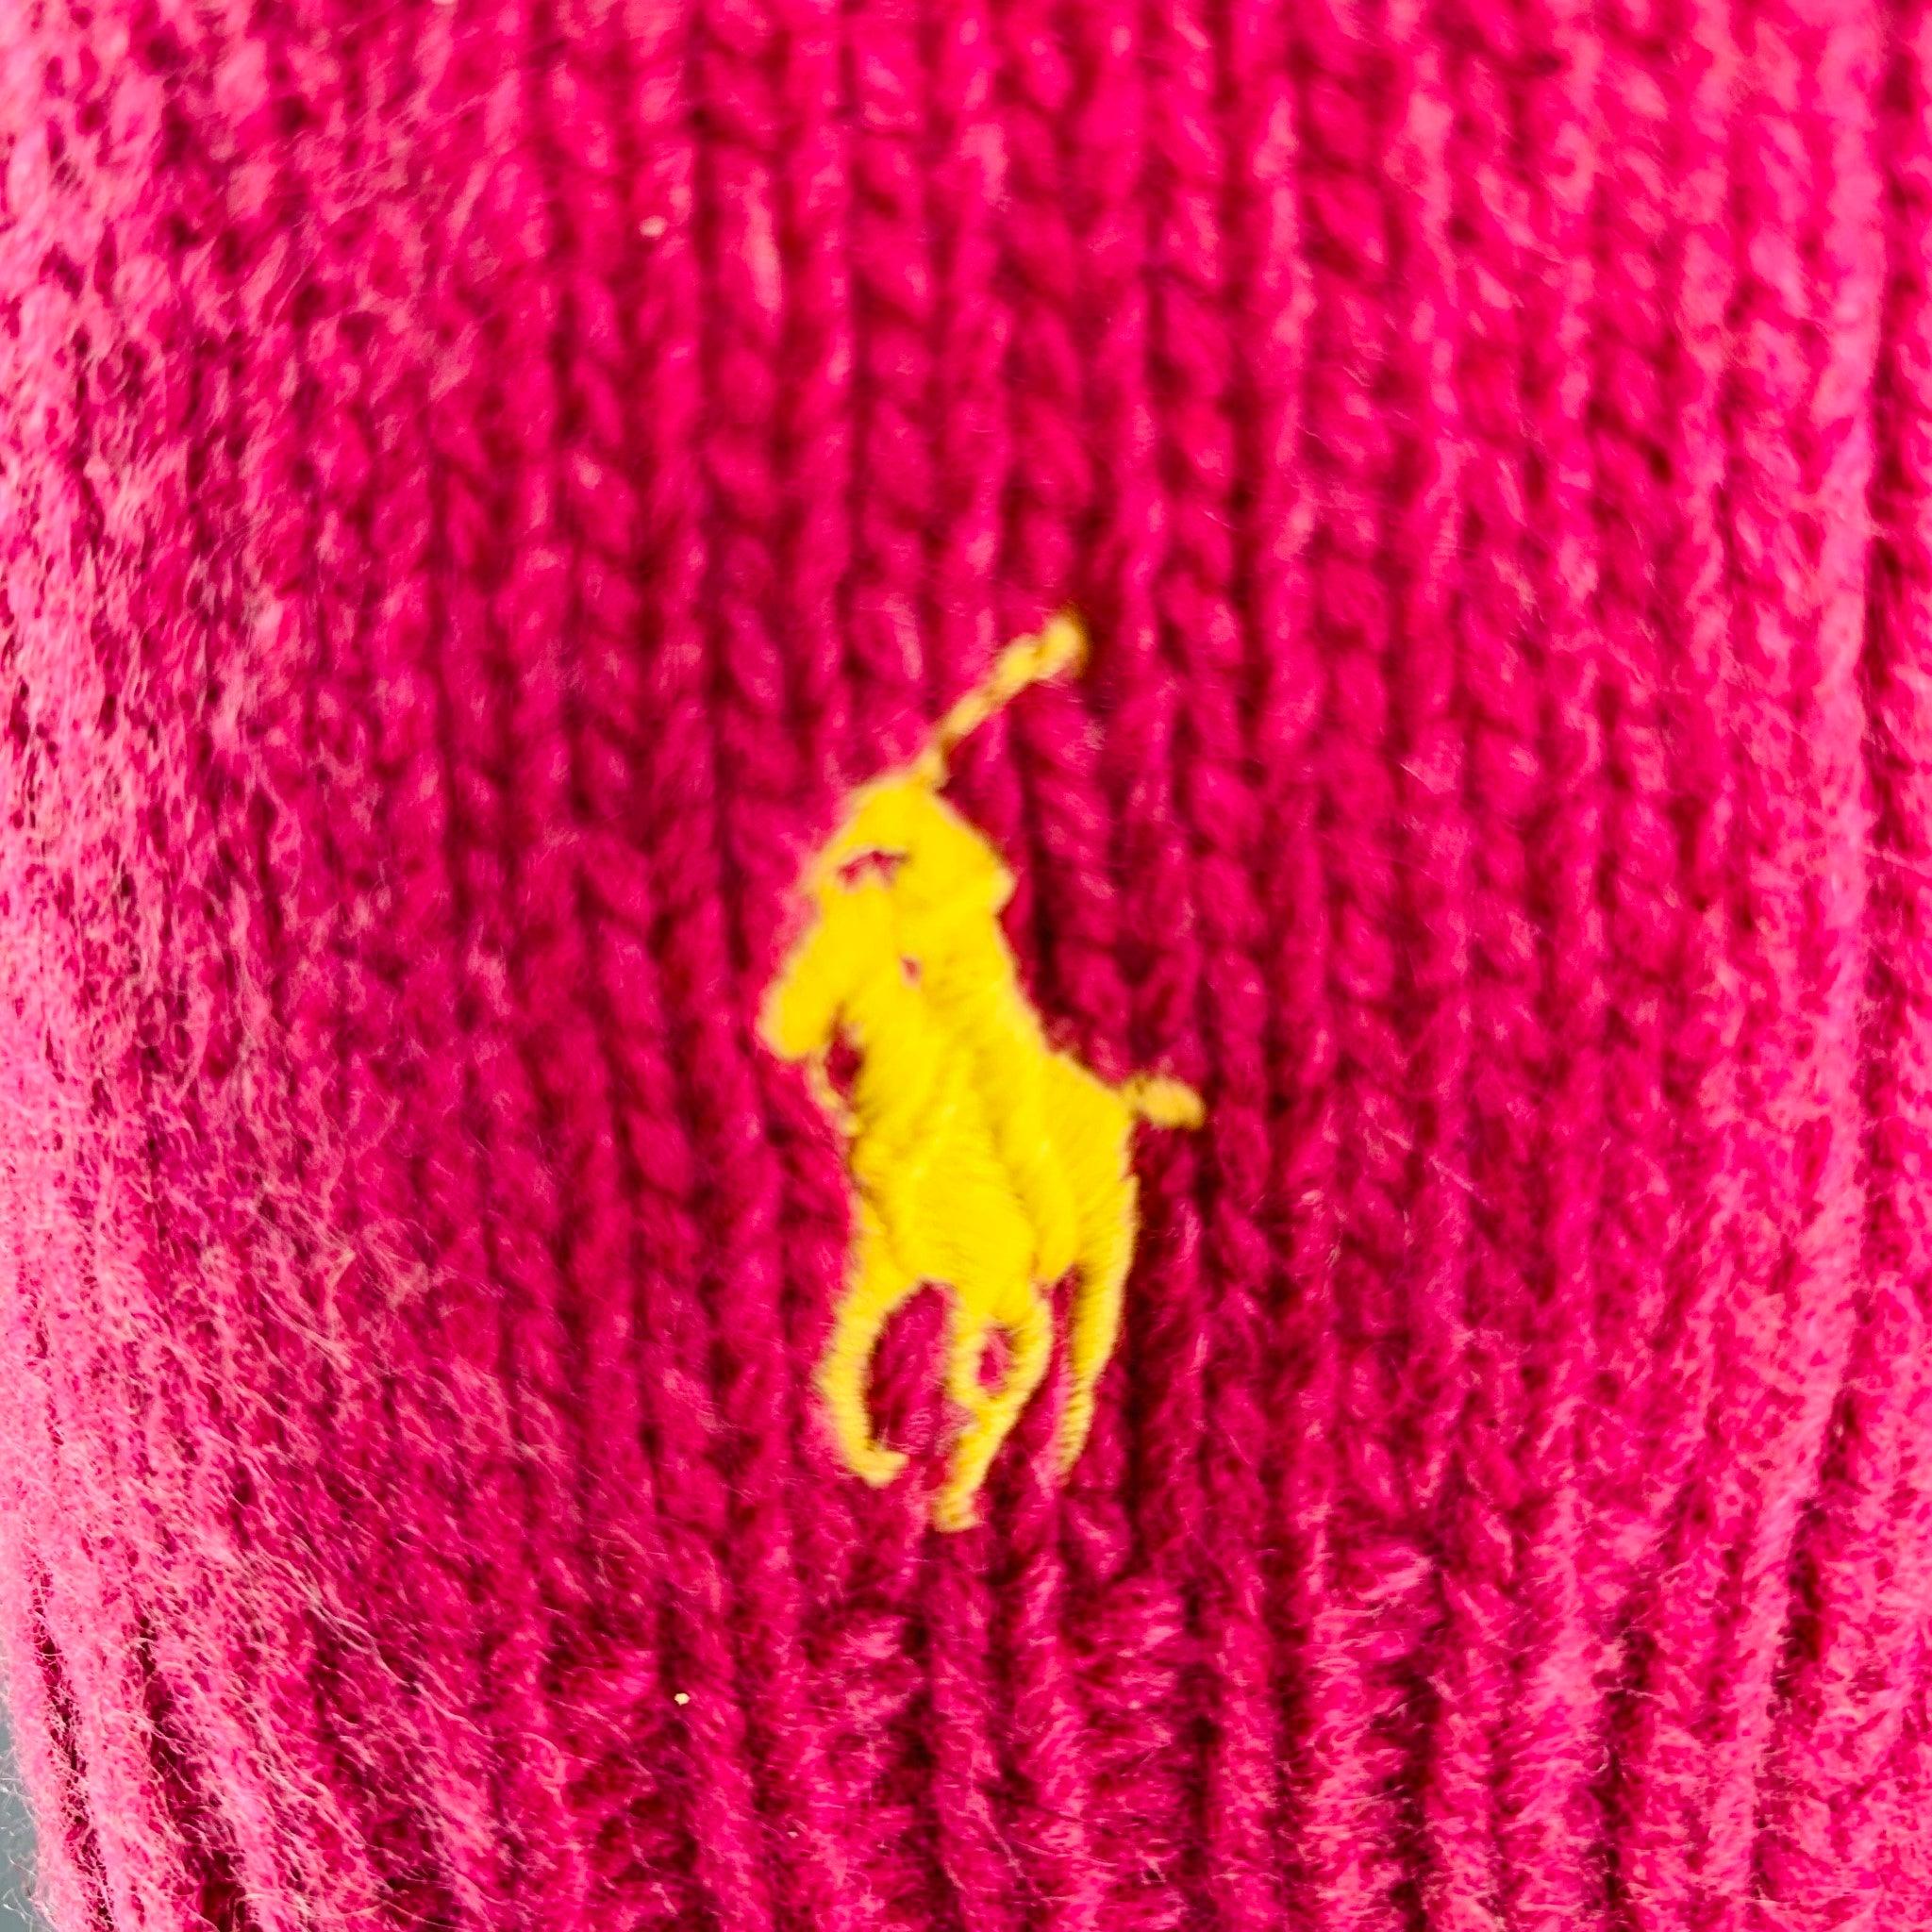 L'écharpe RALPH LAUREN se présente sous la forme d'un tricot de cachemire et de laine rose arborant le logo Yellow Pony.Très bon état d'occasion. 

Mesures : 
  86 pouces  x 8,5 pouces 
 
  
  
 
Numéro de référence : 128310
Catégorie : Foulards et